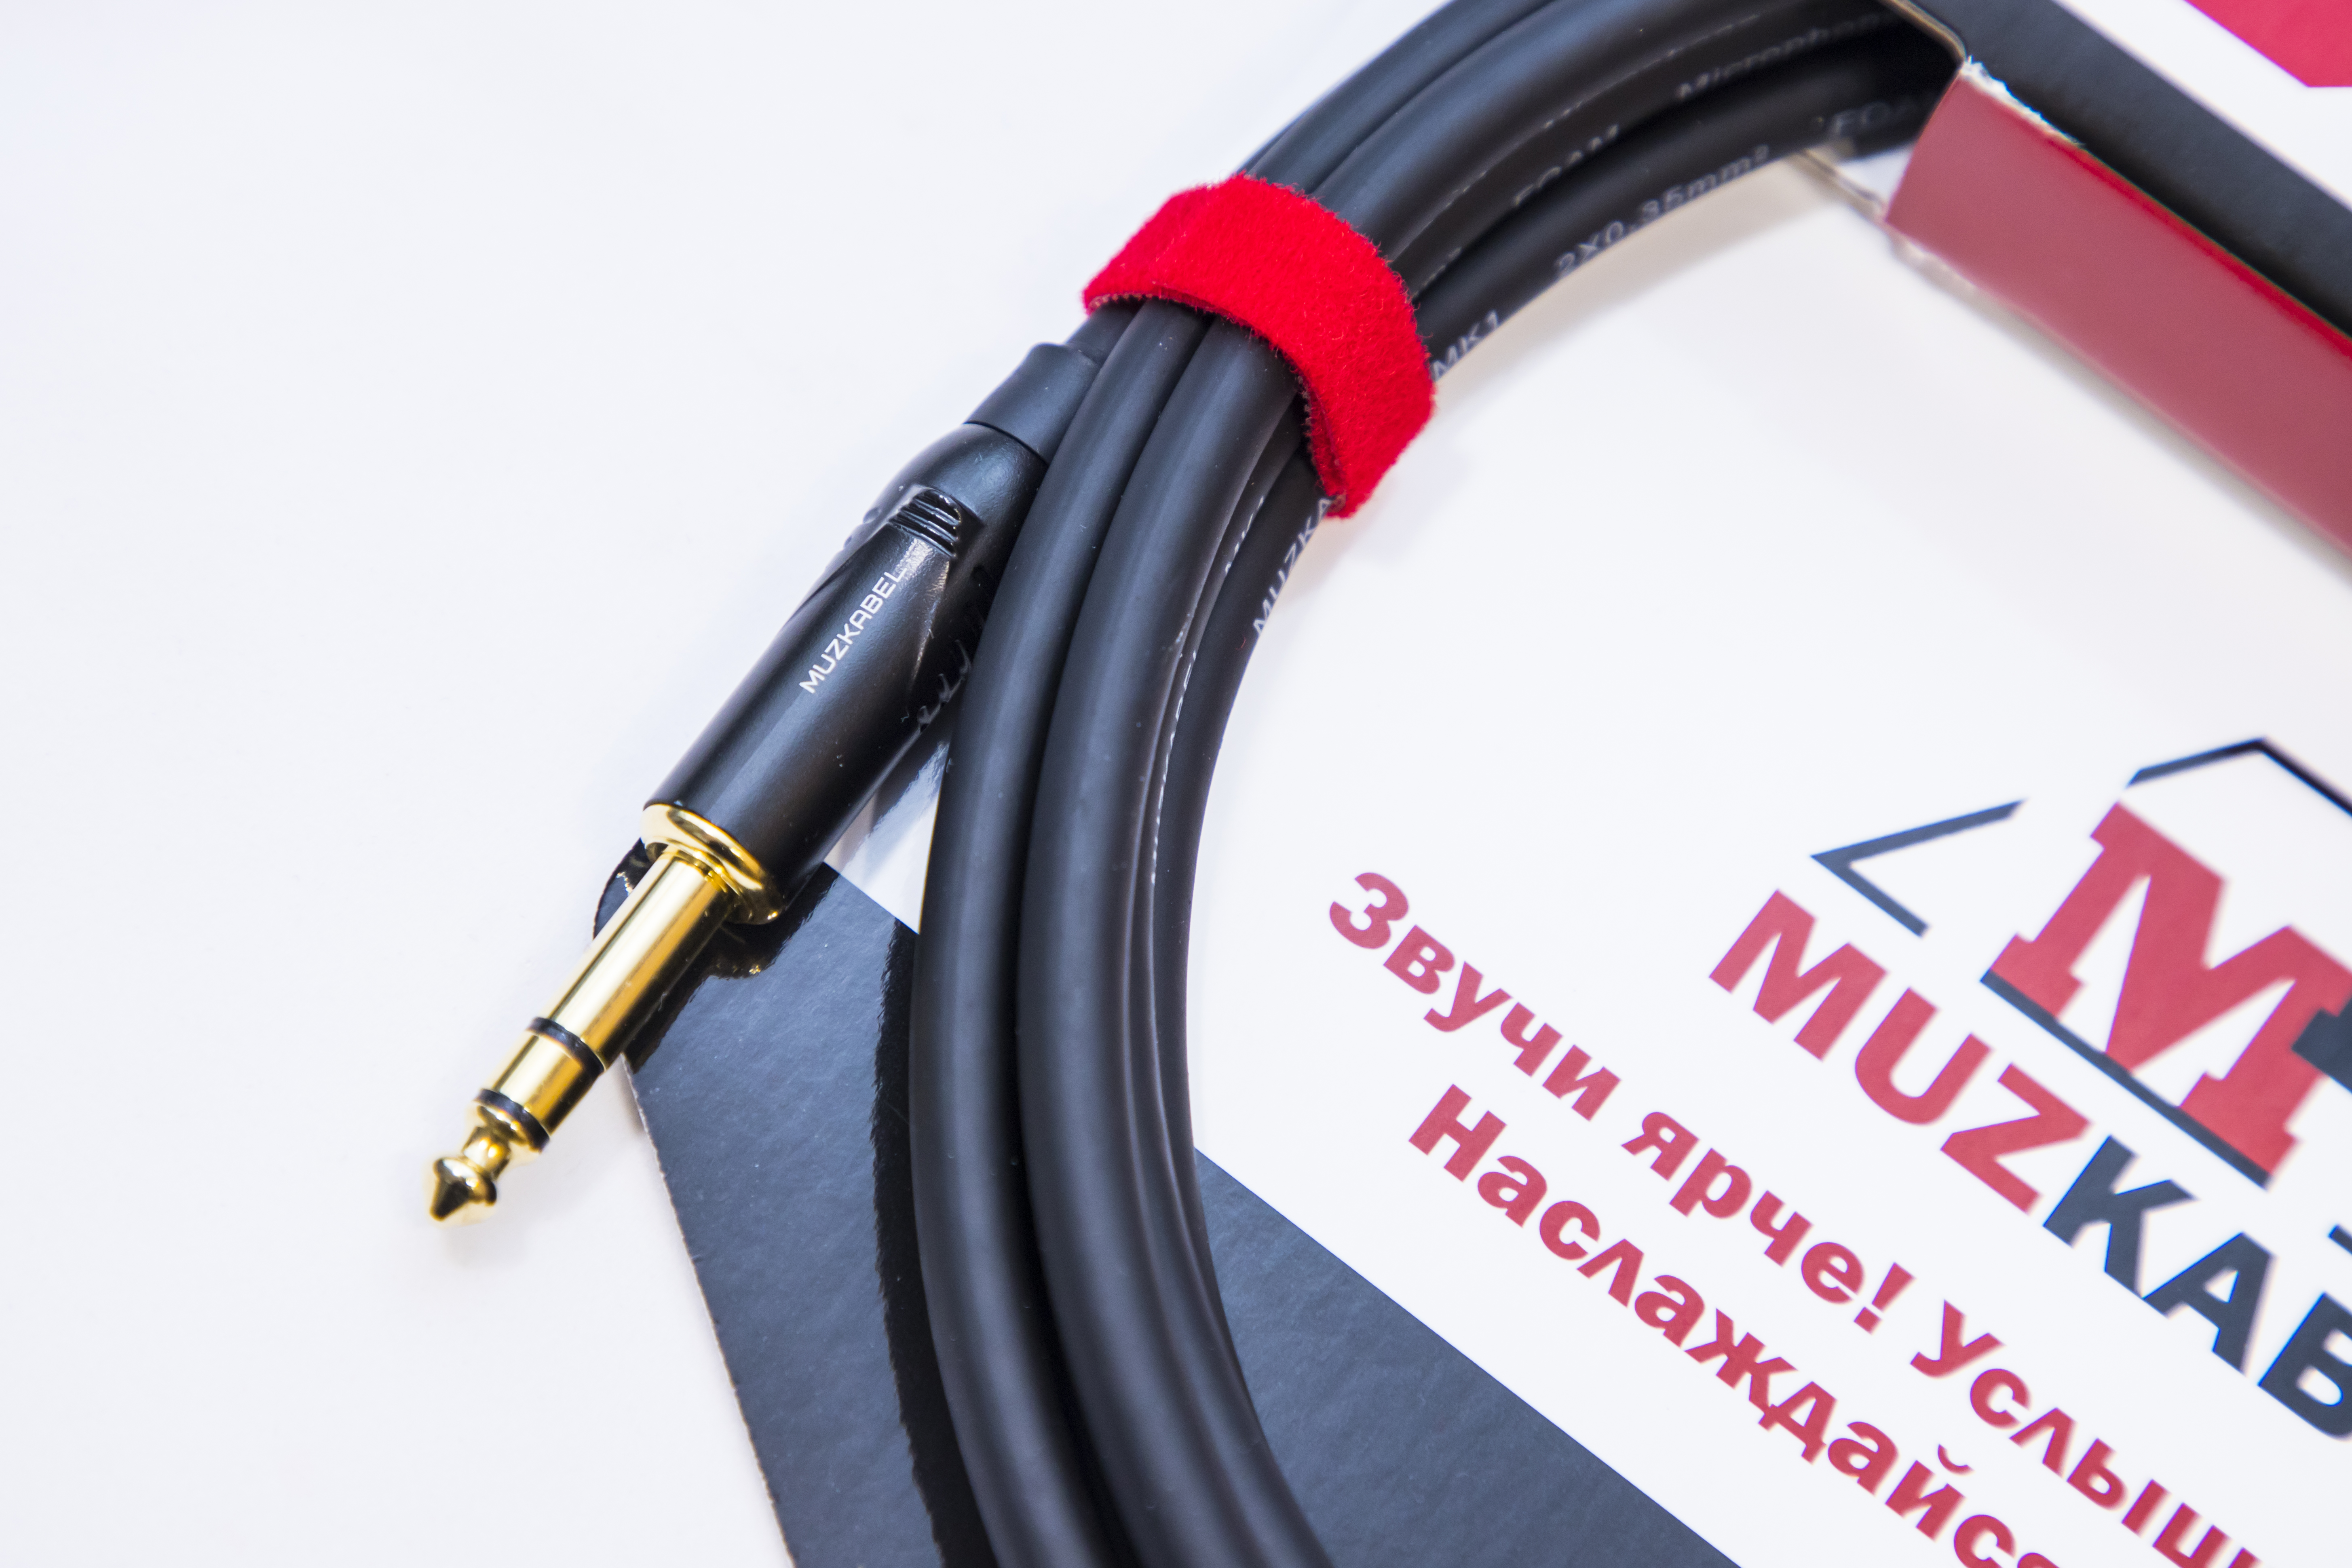 Аудио кабель MUZKABEL SJXMK2 - 2 метра, XLR (папа) - JACK (стерео)